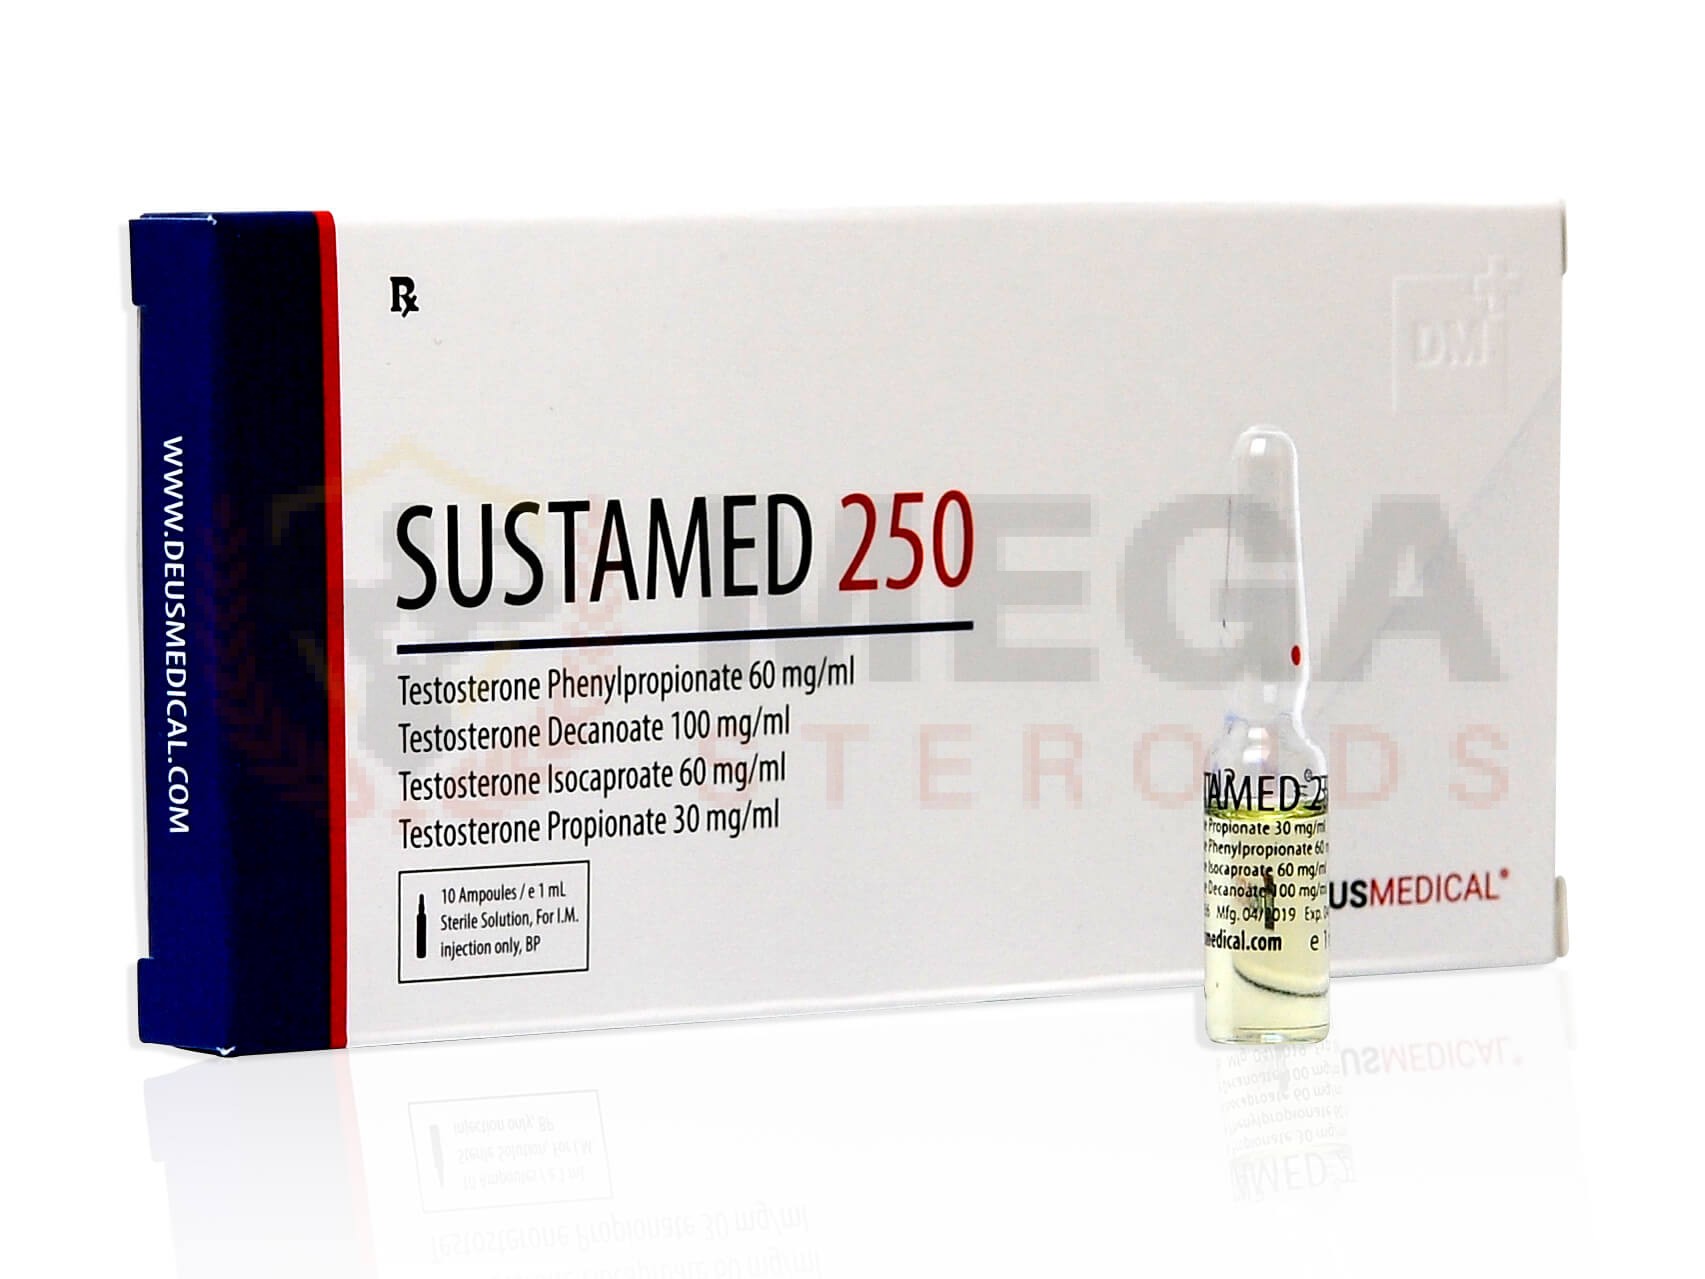 SUSTAMED 250 (Test Phen 60 + Test D 100 + Test I 60 + Test Prop 30) – 10amp di 1ml – DEUS-MEDICAL Iniezione di steroidi